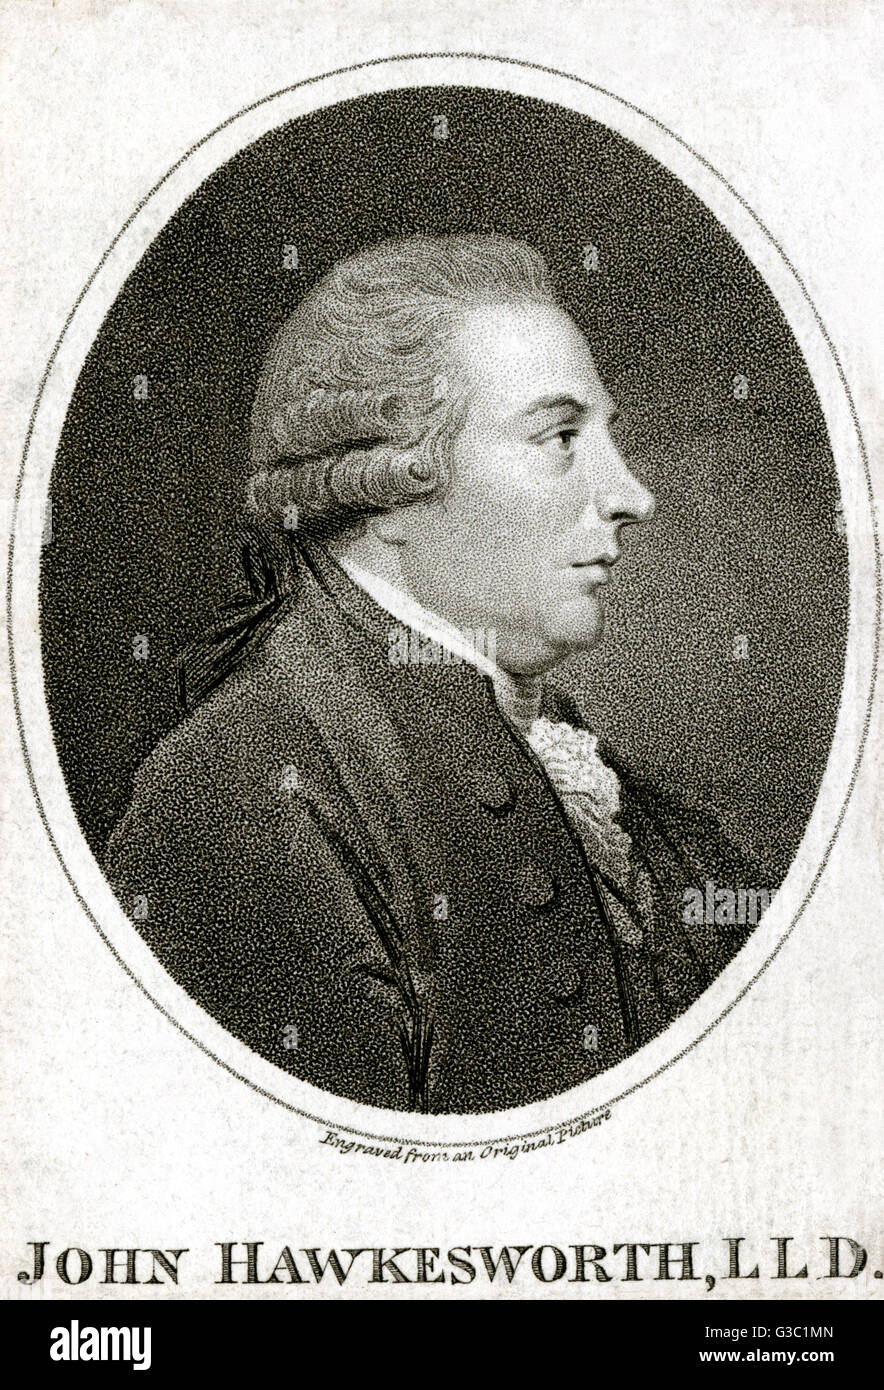 John Hawkesworth (1715-1773) - englischer Autor und Redakteur buchen. Hawkesworth wurde belohnt durch den Erzbischof von Canterbury mit dem Grad eines Doktor der Rechte.     Datum: ca. 1760 Stockfoto